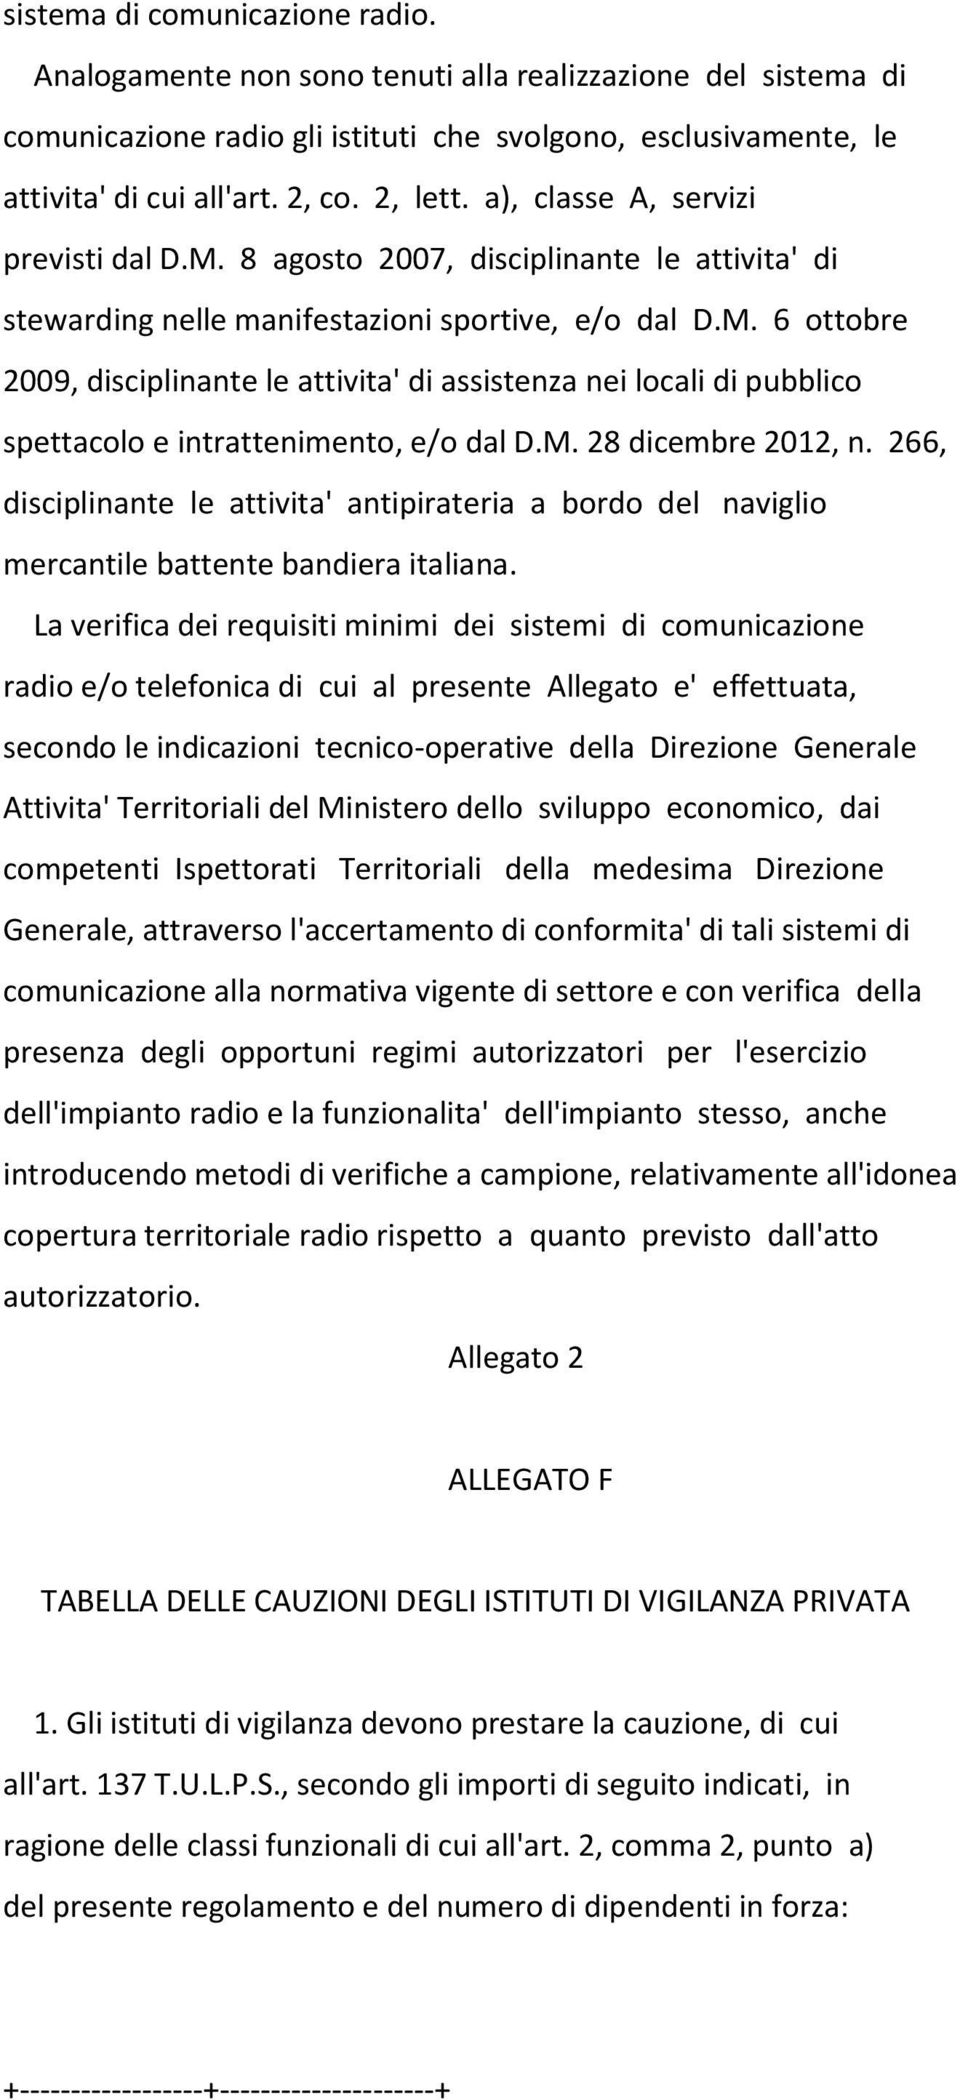 M. 28 dicembre 2012, n. 266, disciplinante le attivita' antipirateria a bordo del naviglio mercantile battente bandiera italiana.